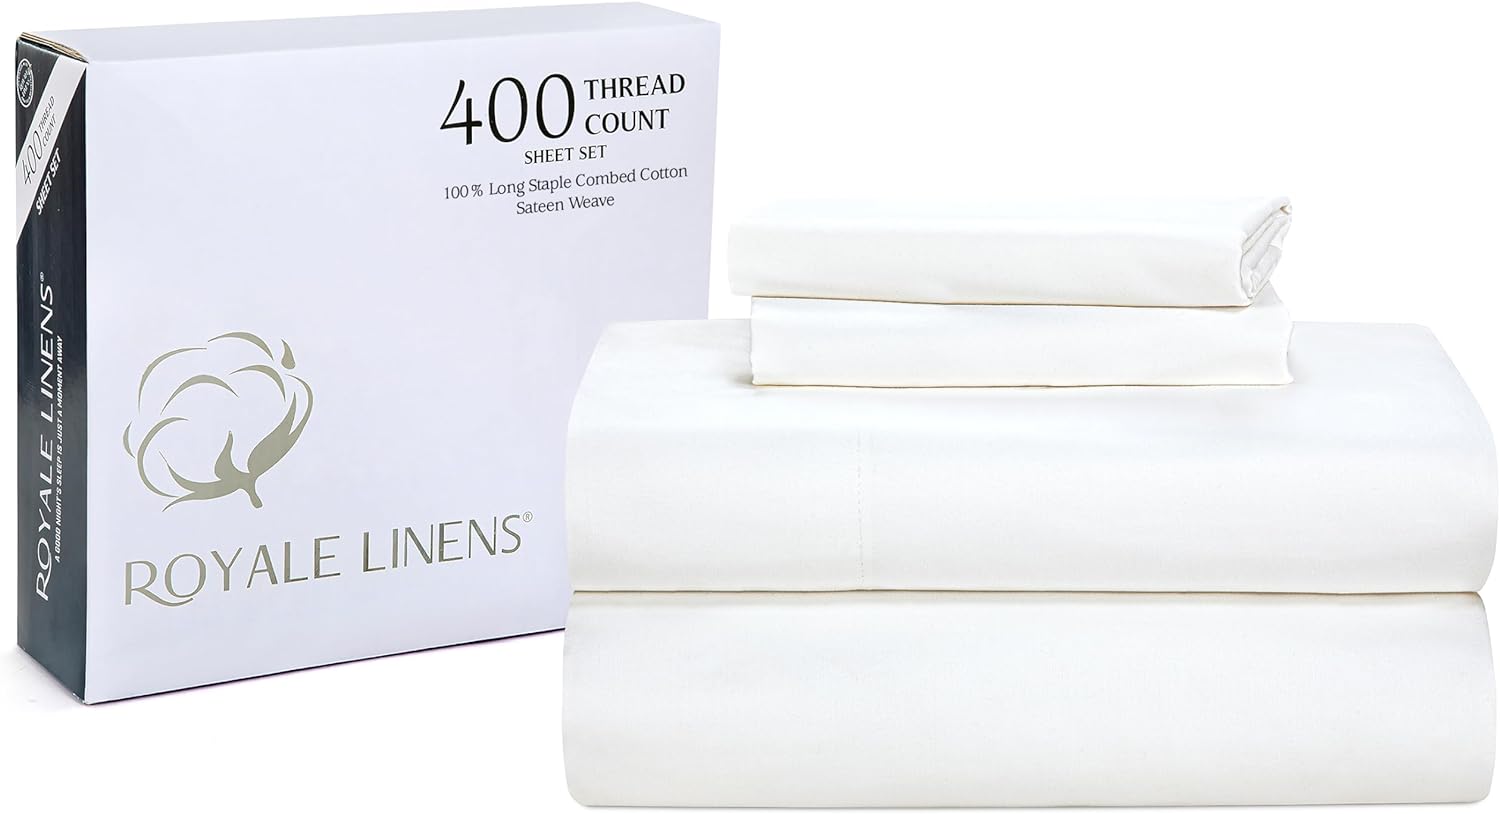 ROYALE LINENS 400 Thread Count 100% American Grown Cotton 4 Piece Sateen Queen Sheet Set - Fitted Sheet, Flat Sheet, Pillow case (Signature White, Queen Sheet Set)